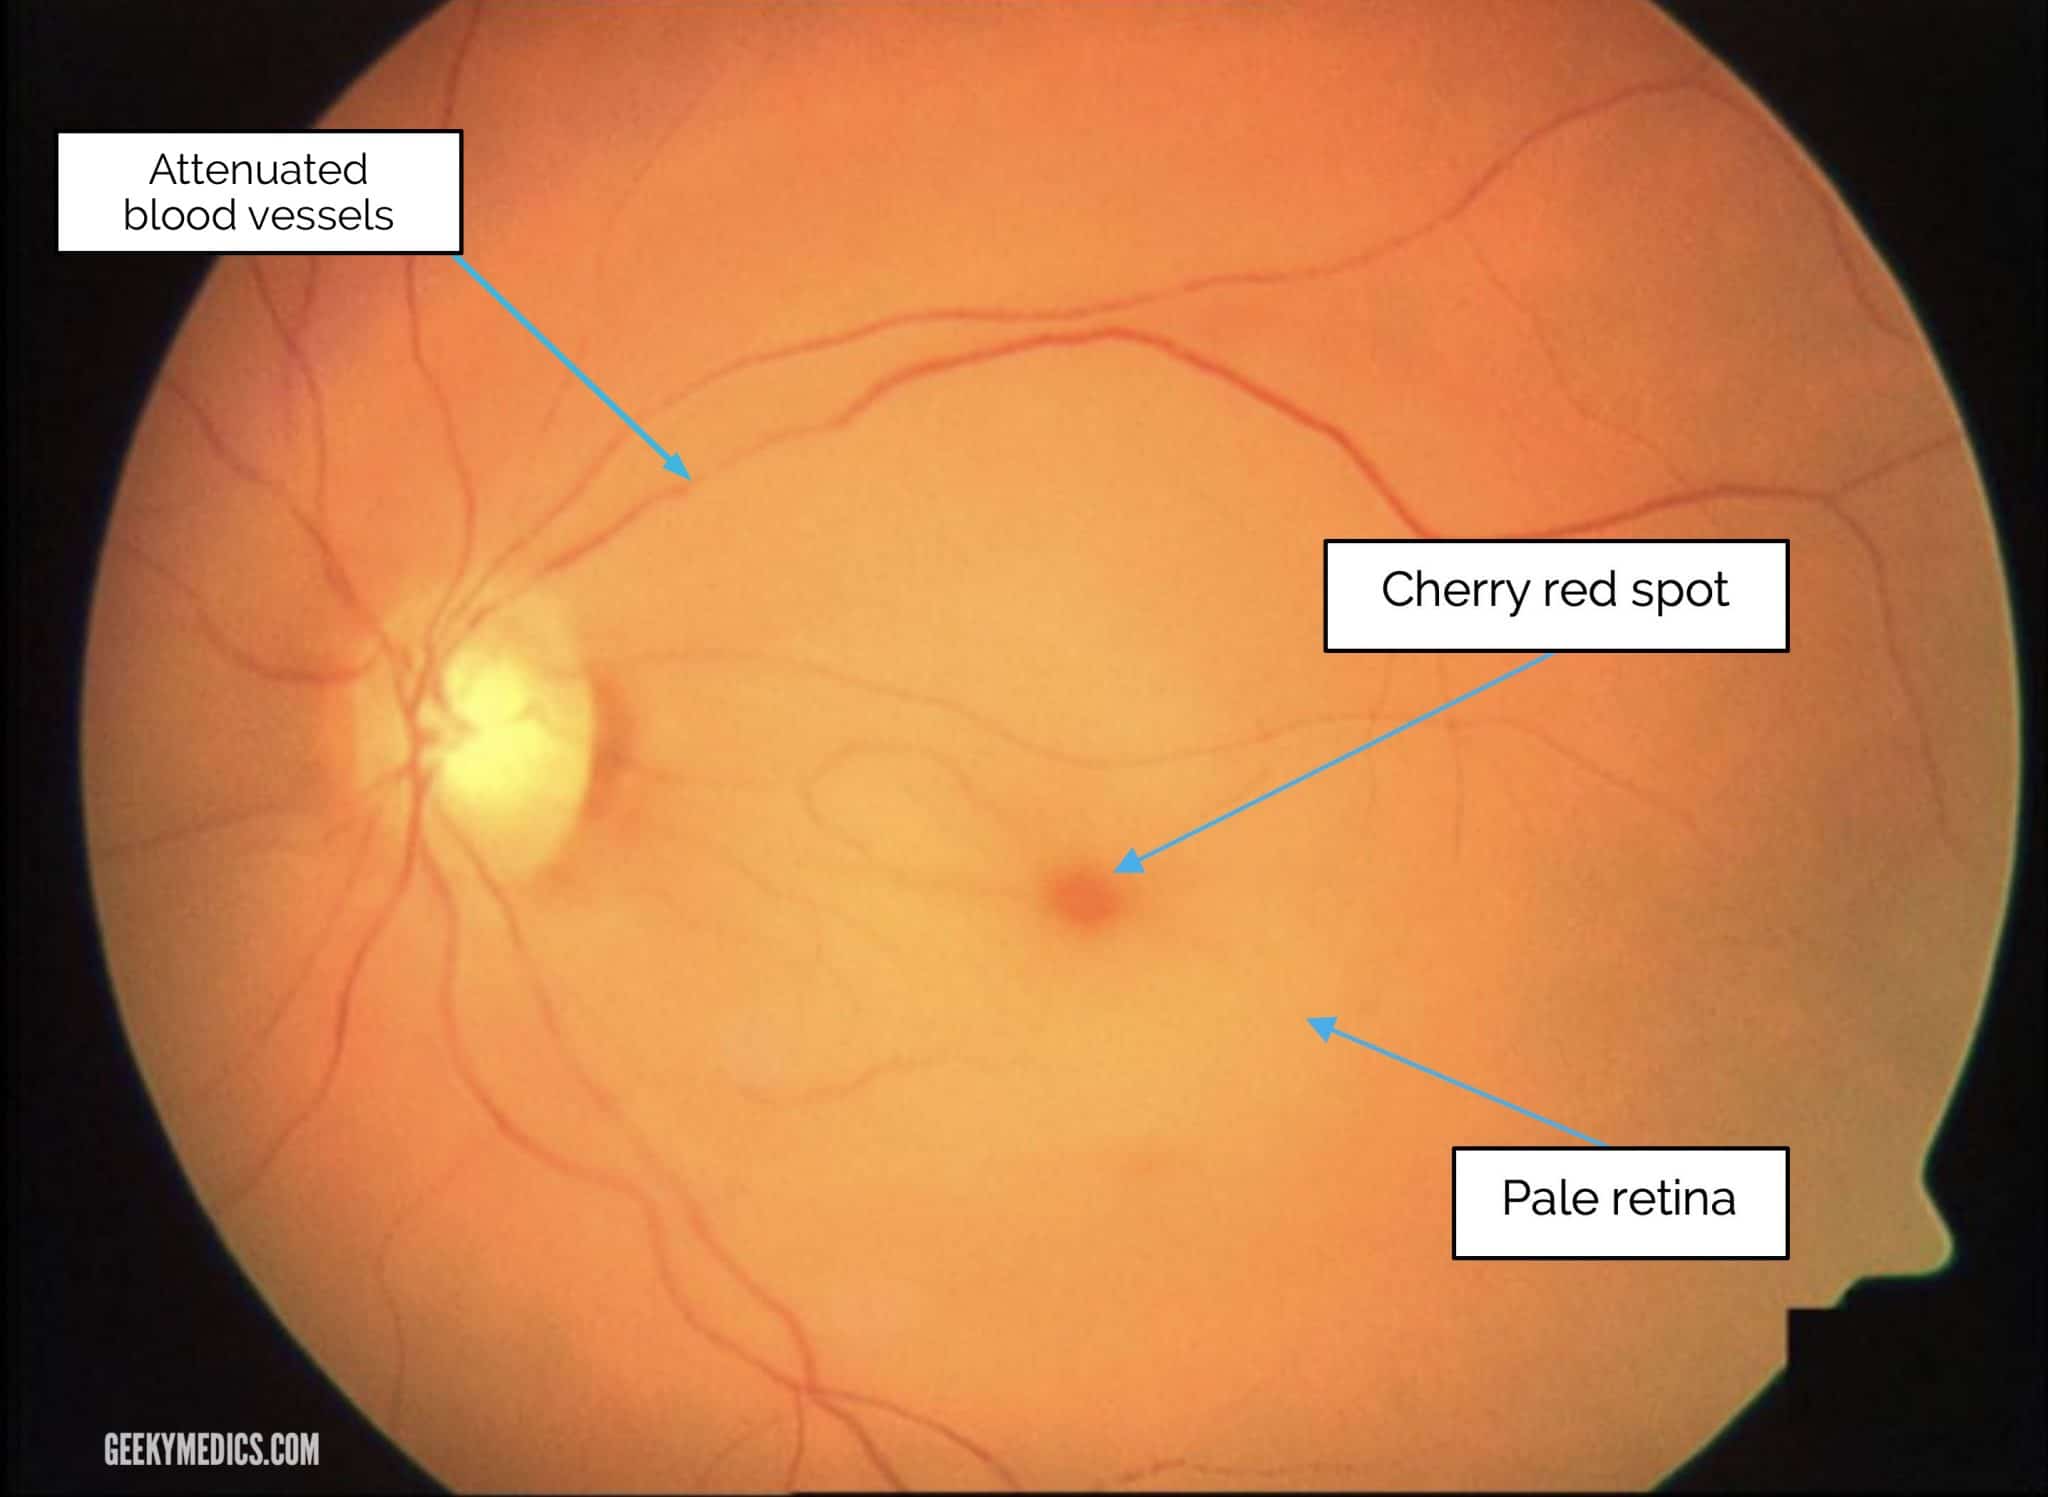 central retinal artery anatomy